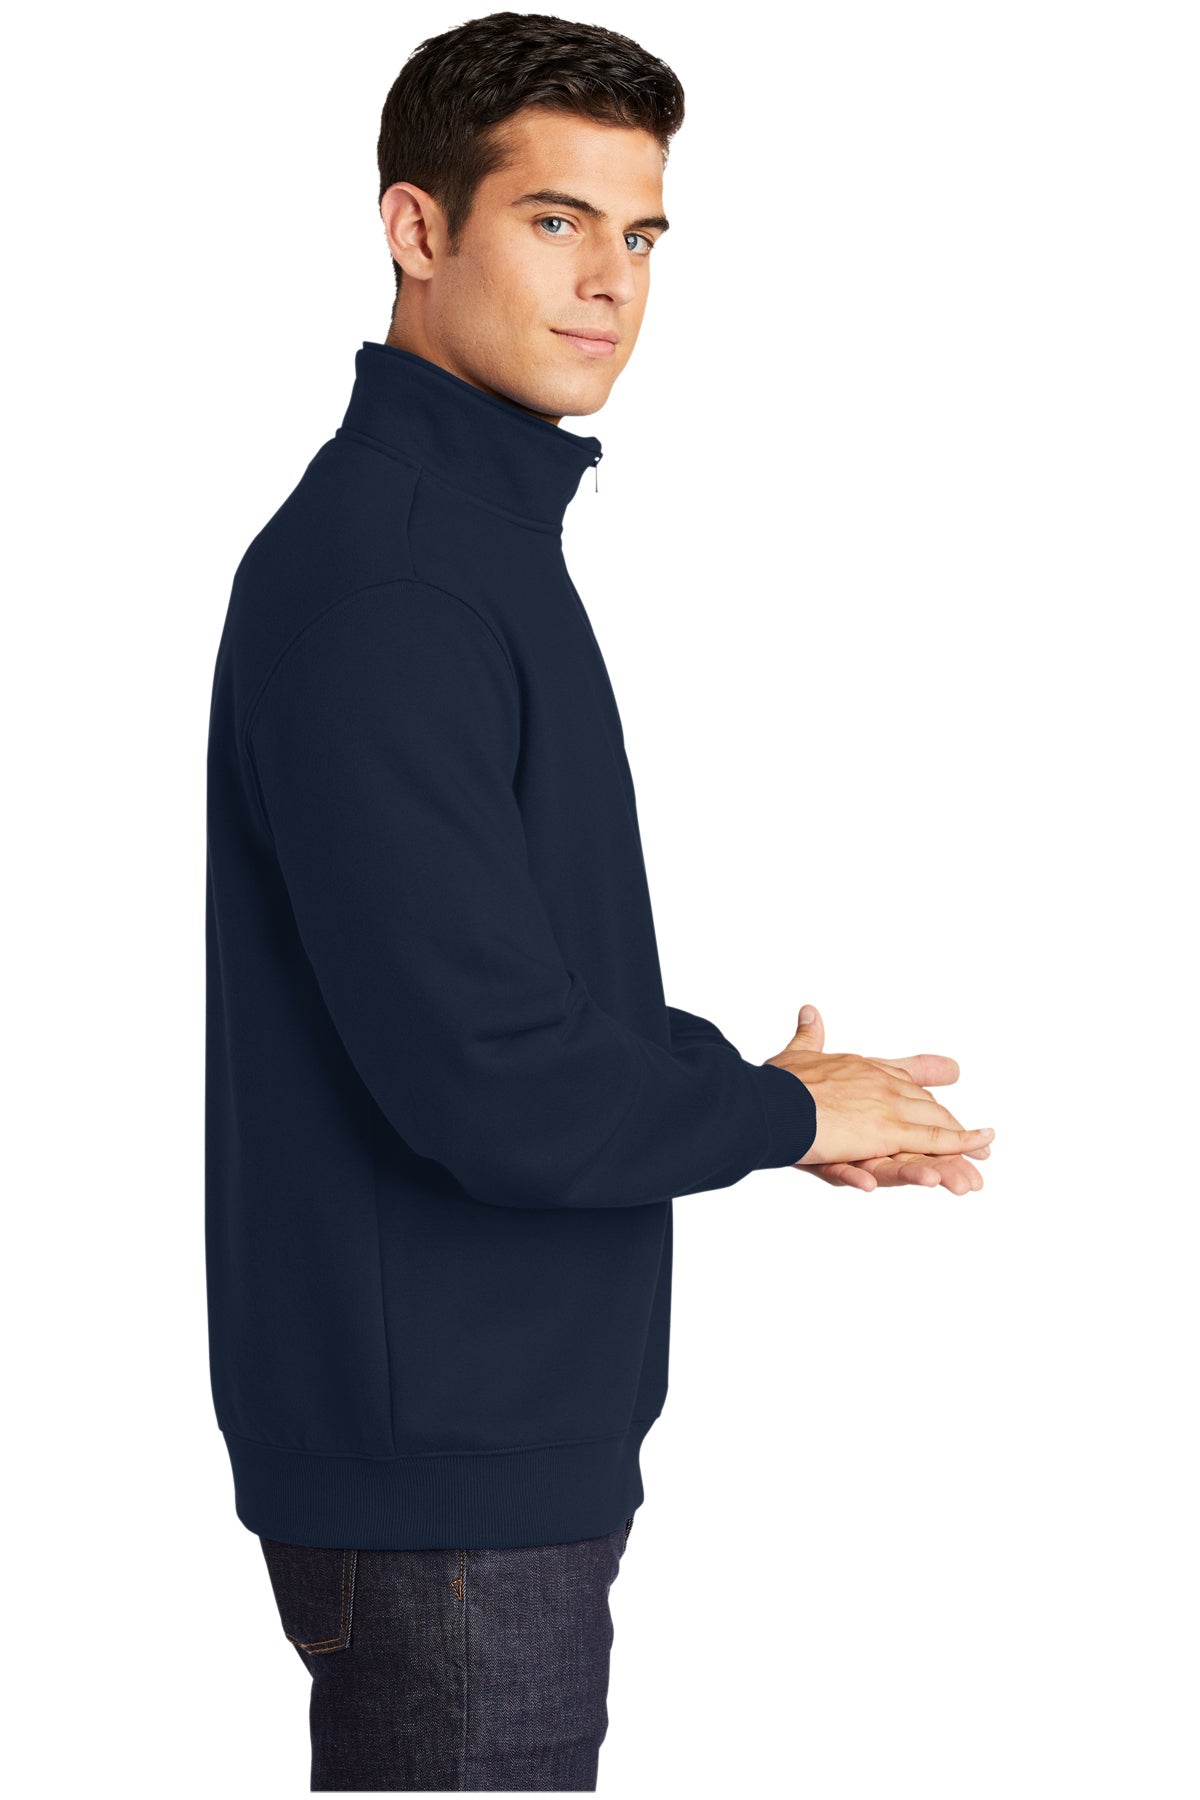 Sport-Tek Tall Customized 1/4-Zip Sweatshirts, True Navy